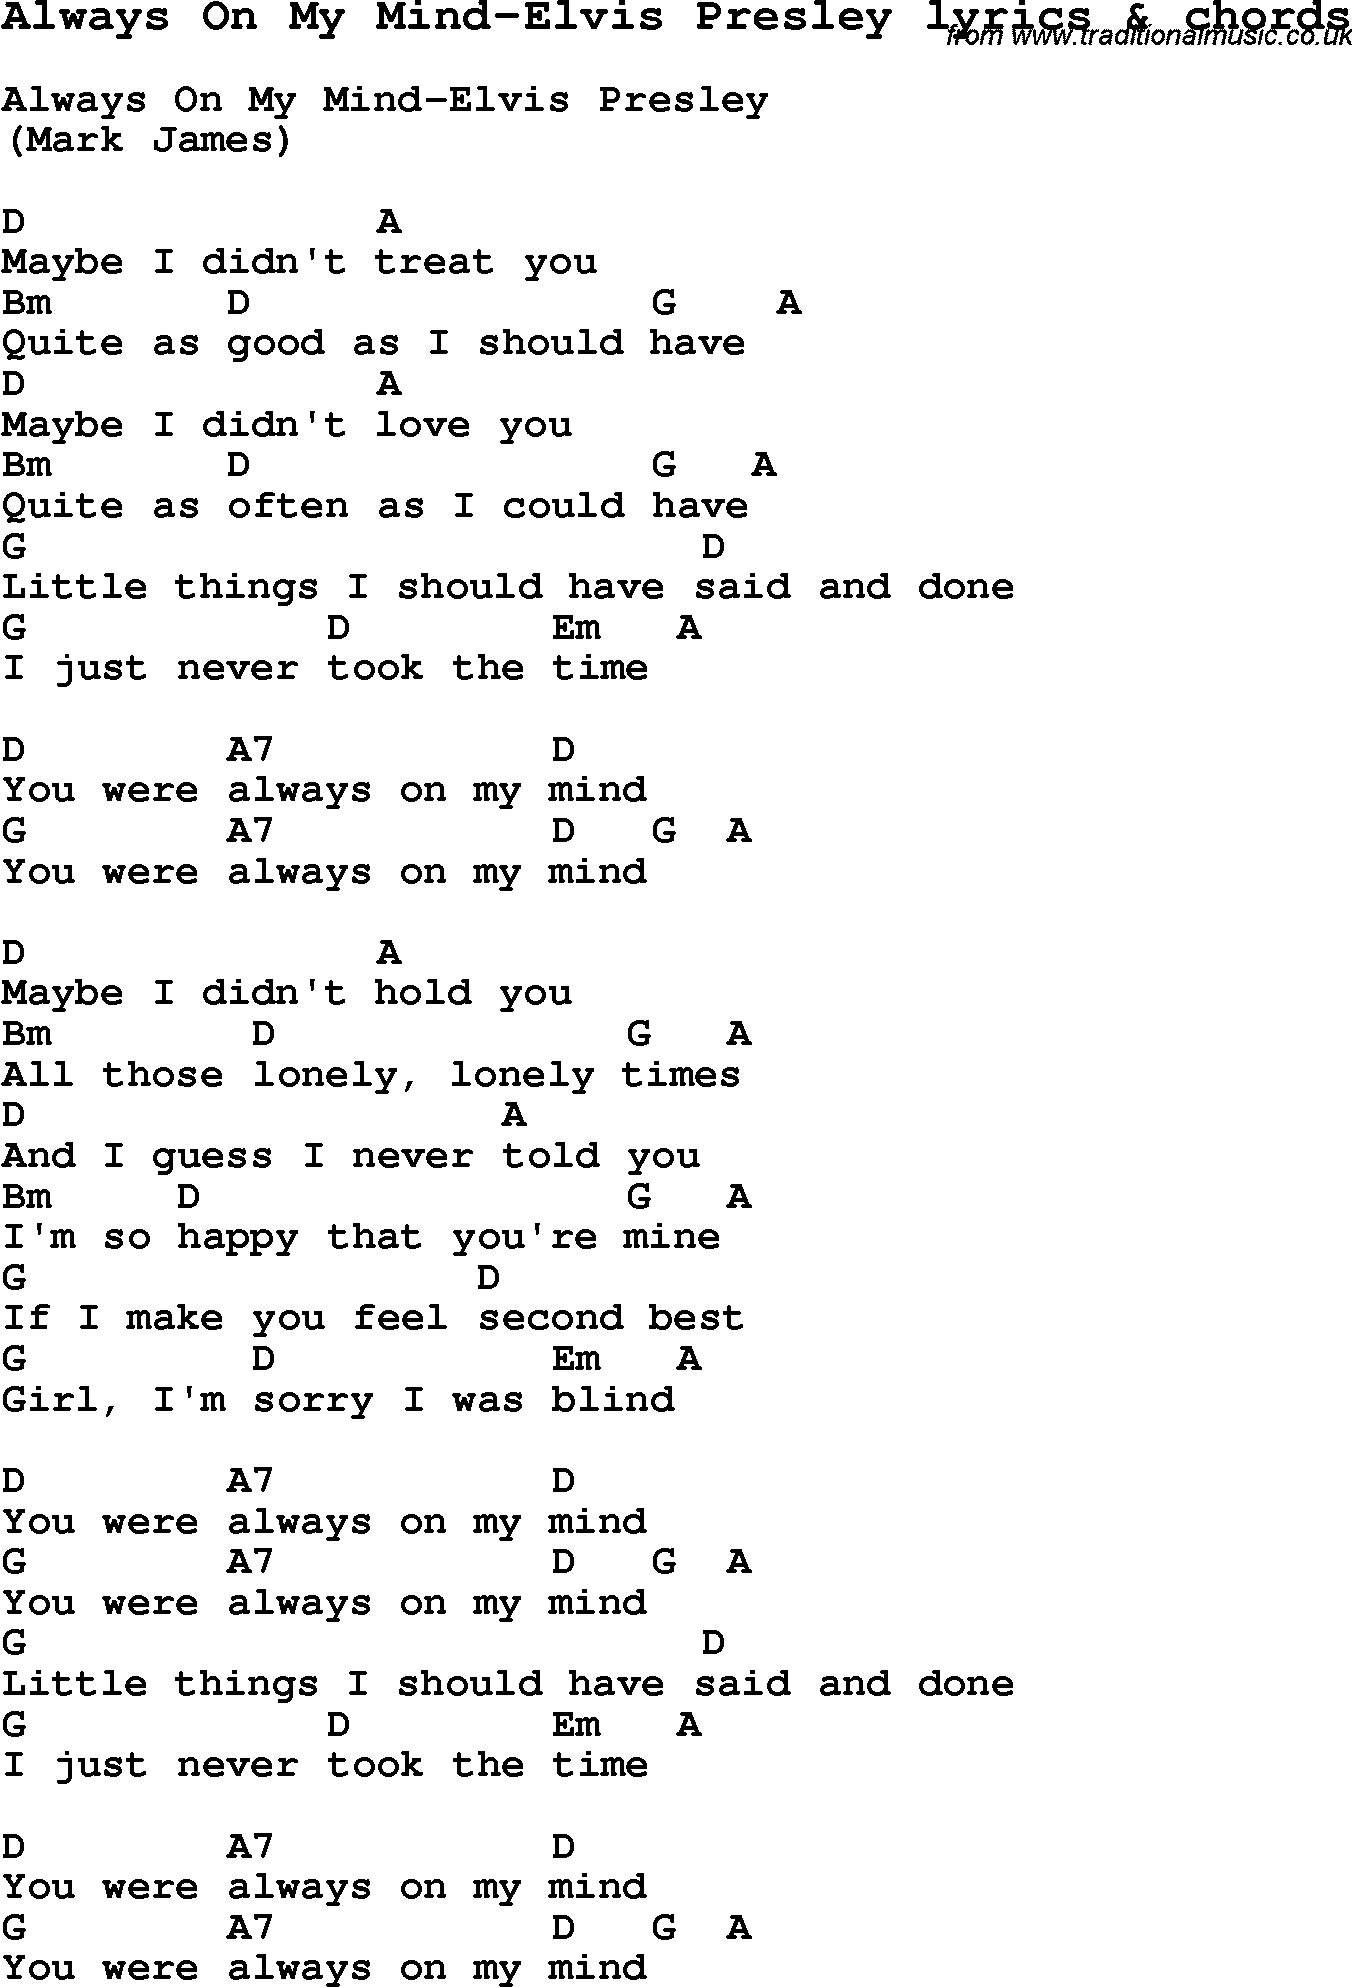 Love Song Lyrics for: Always On My Mind-Elvis Presley with chords for Ukulele, Guitar Banjo etc.